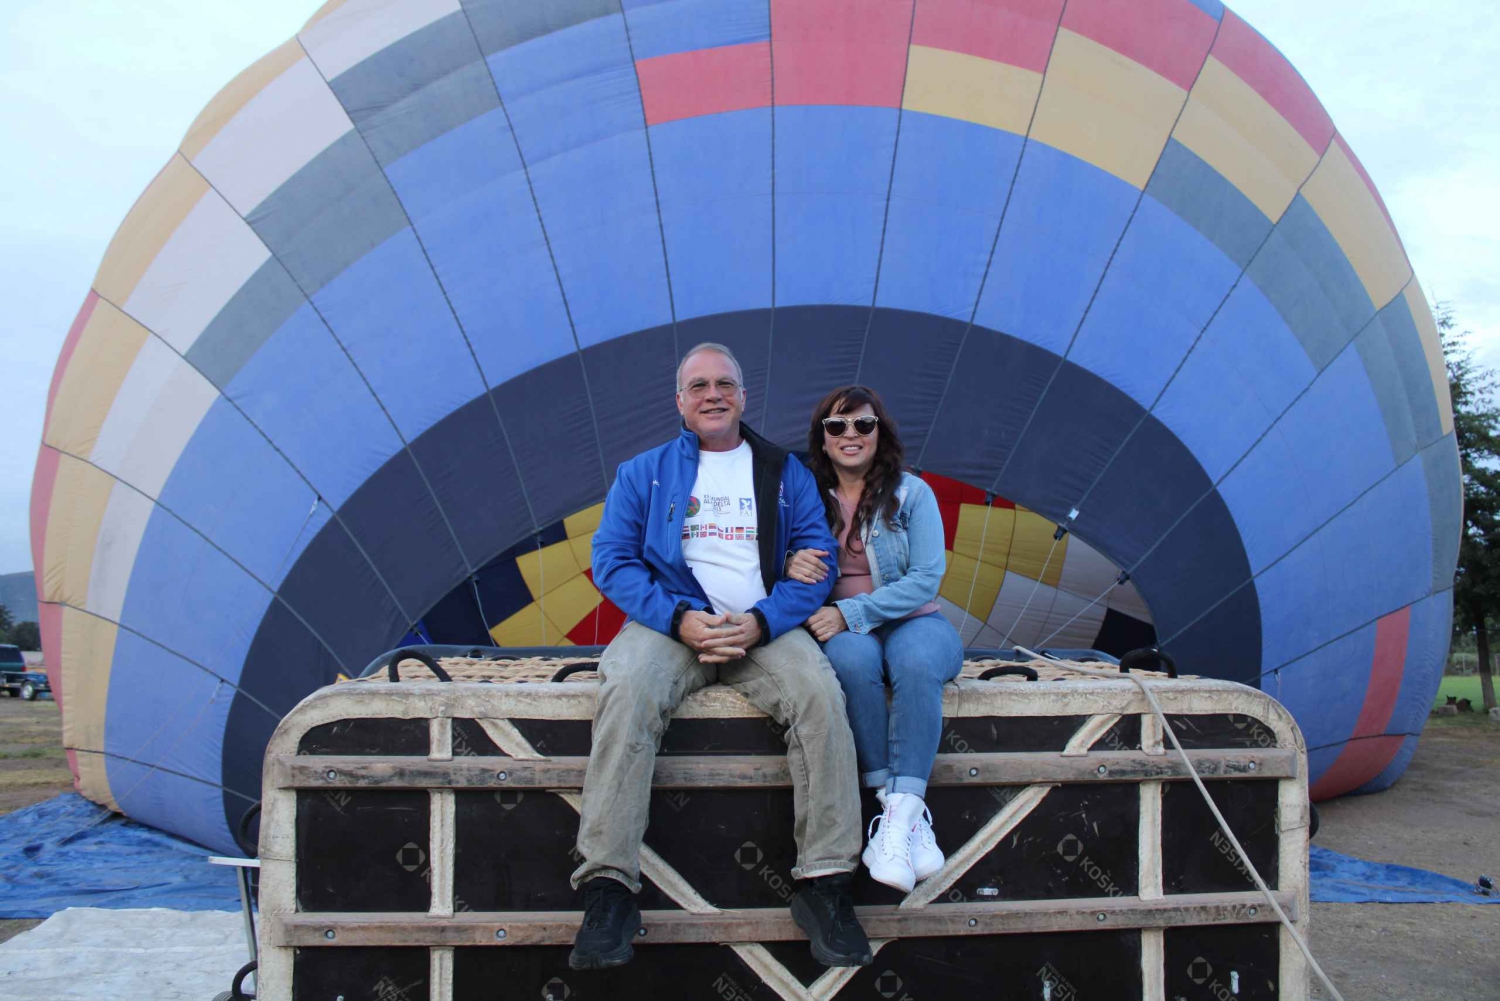 Hot-air balloon flight+breakfast+transportationCdmx-Teotih